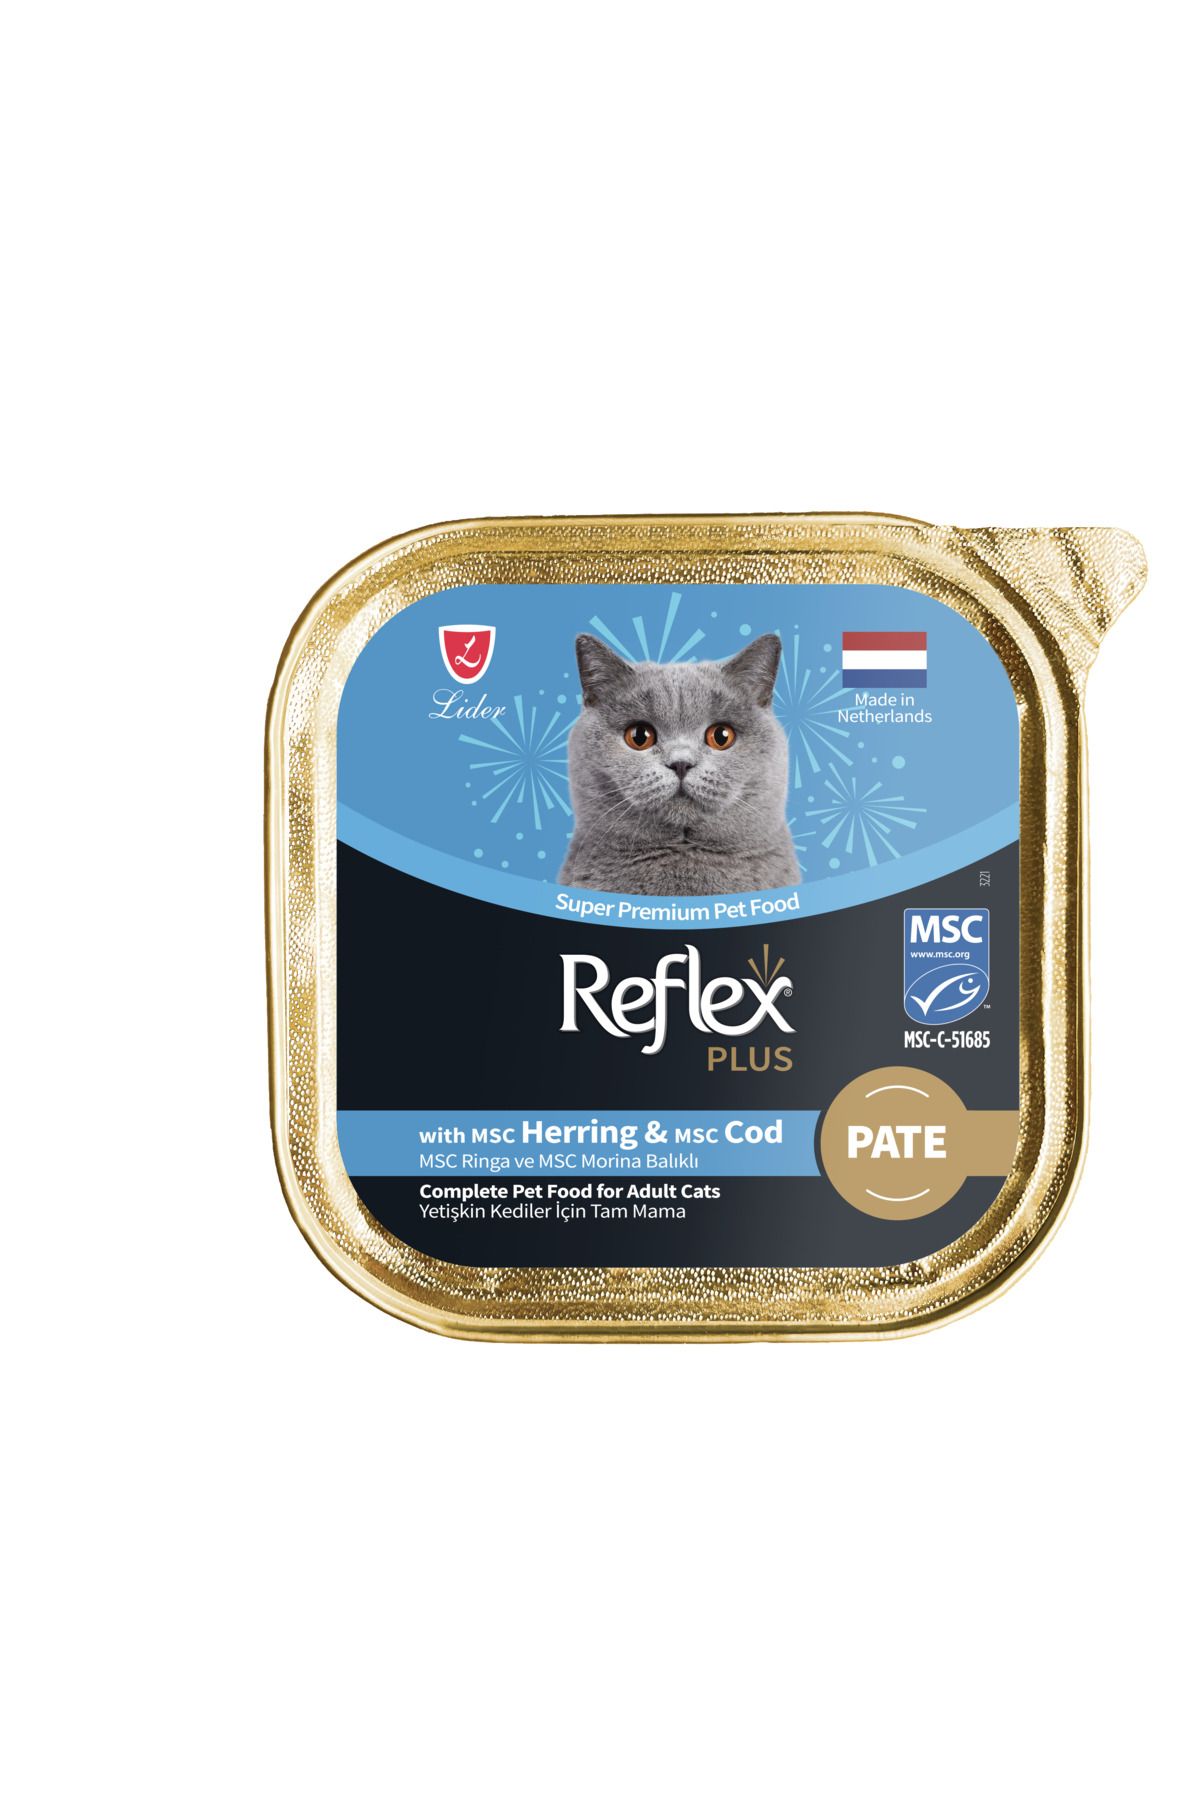 Reflex Plus Alu Tray 85 gr Ringa ve Morina Balıklı Kıyılmış Pate Yetişkin Kedi Yaş Mama